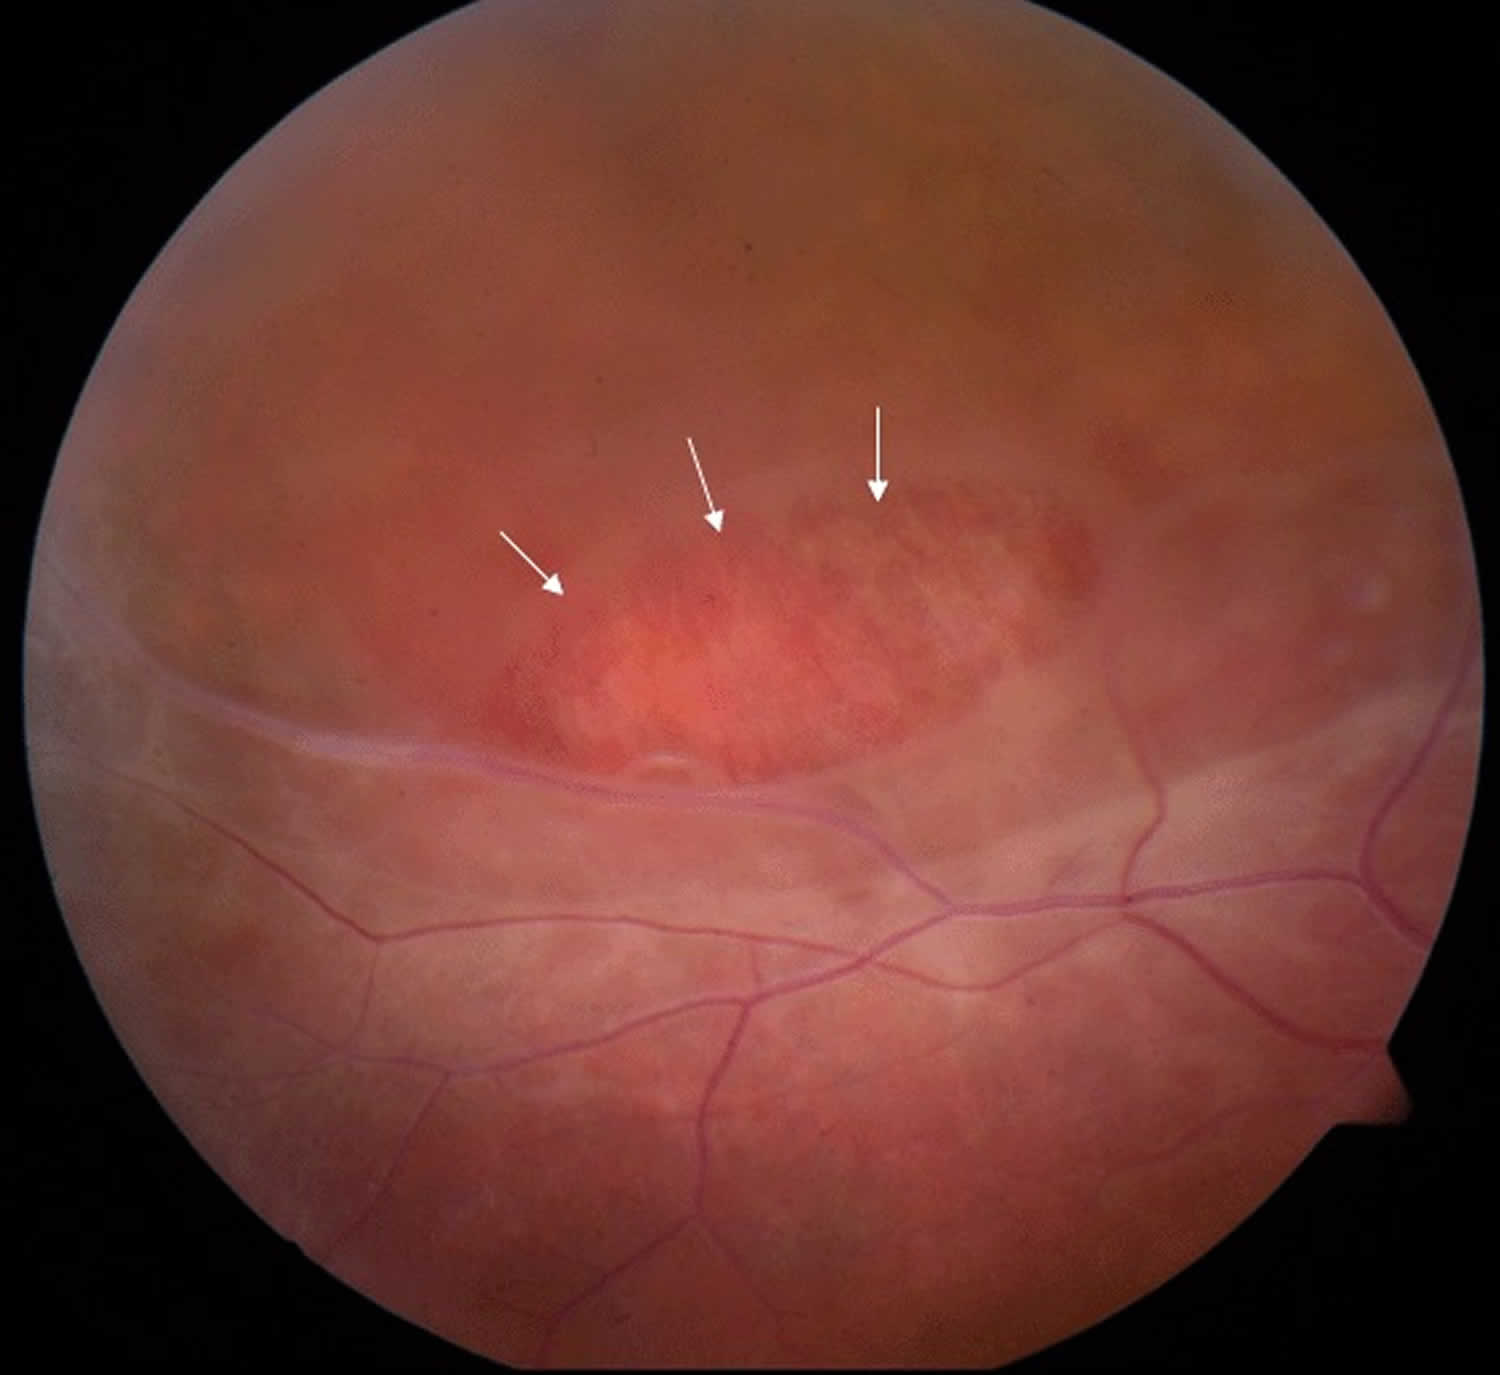 Juvenile retinoschisis